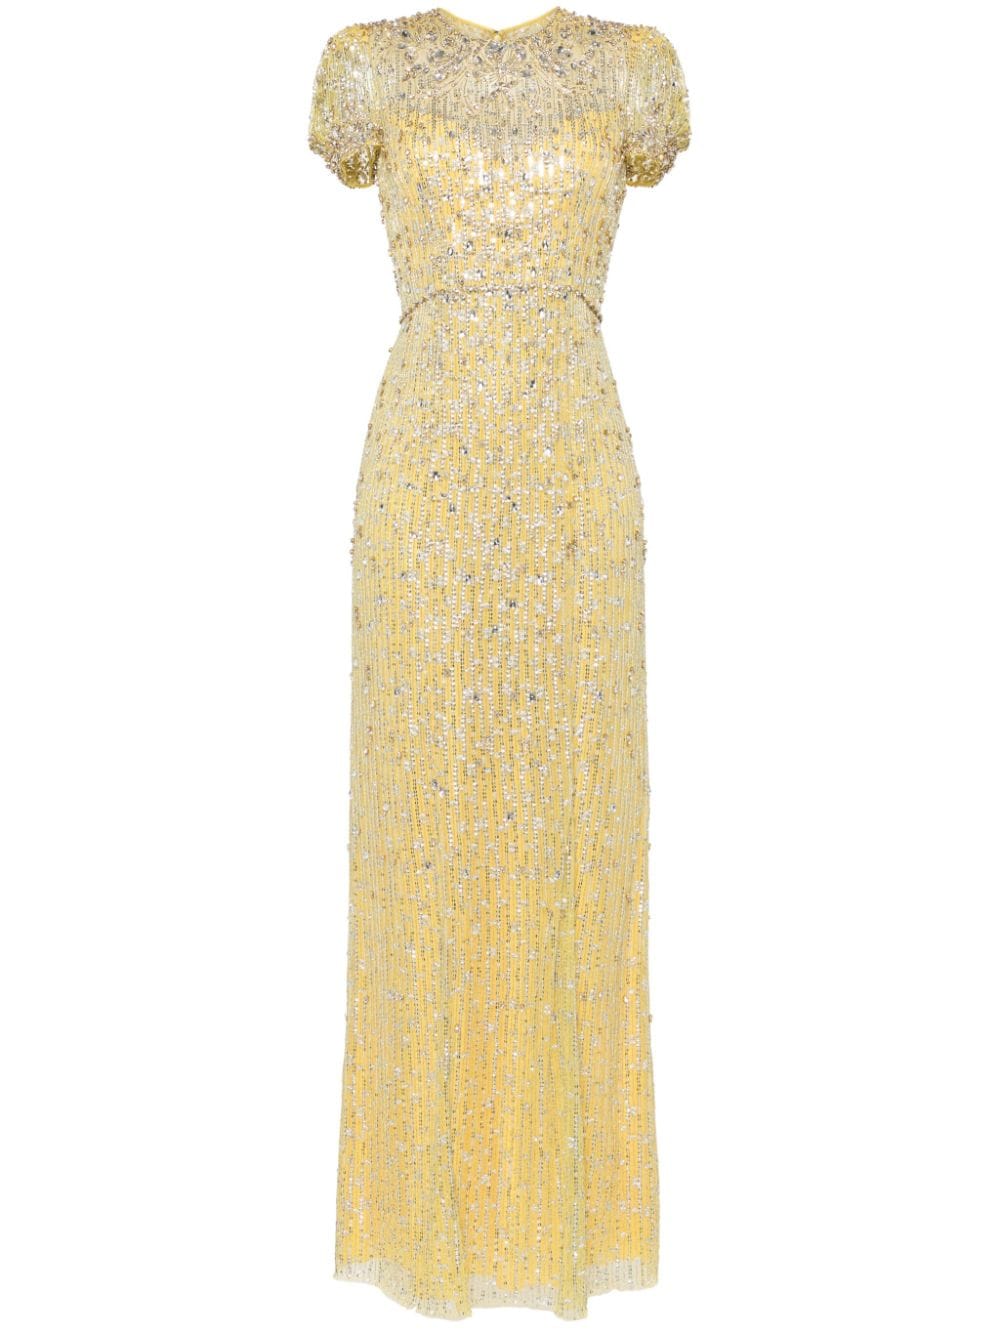 Jenny Packham Aster Kleid mit Kristallen - Gelb von Jenny Packham